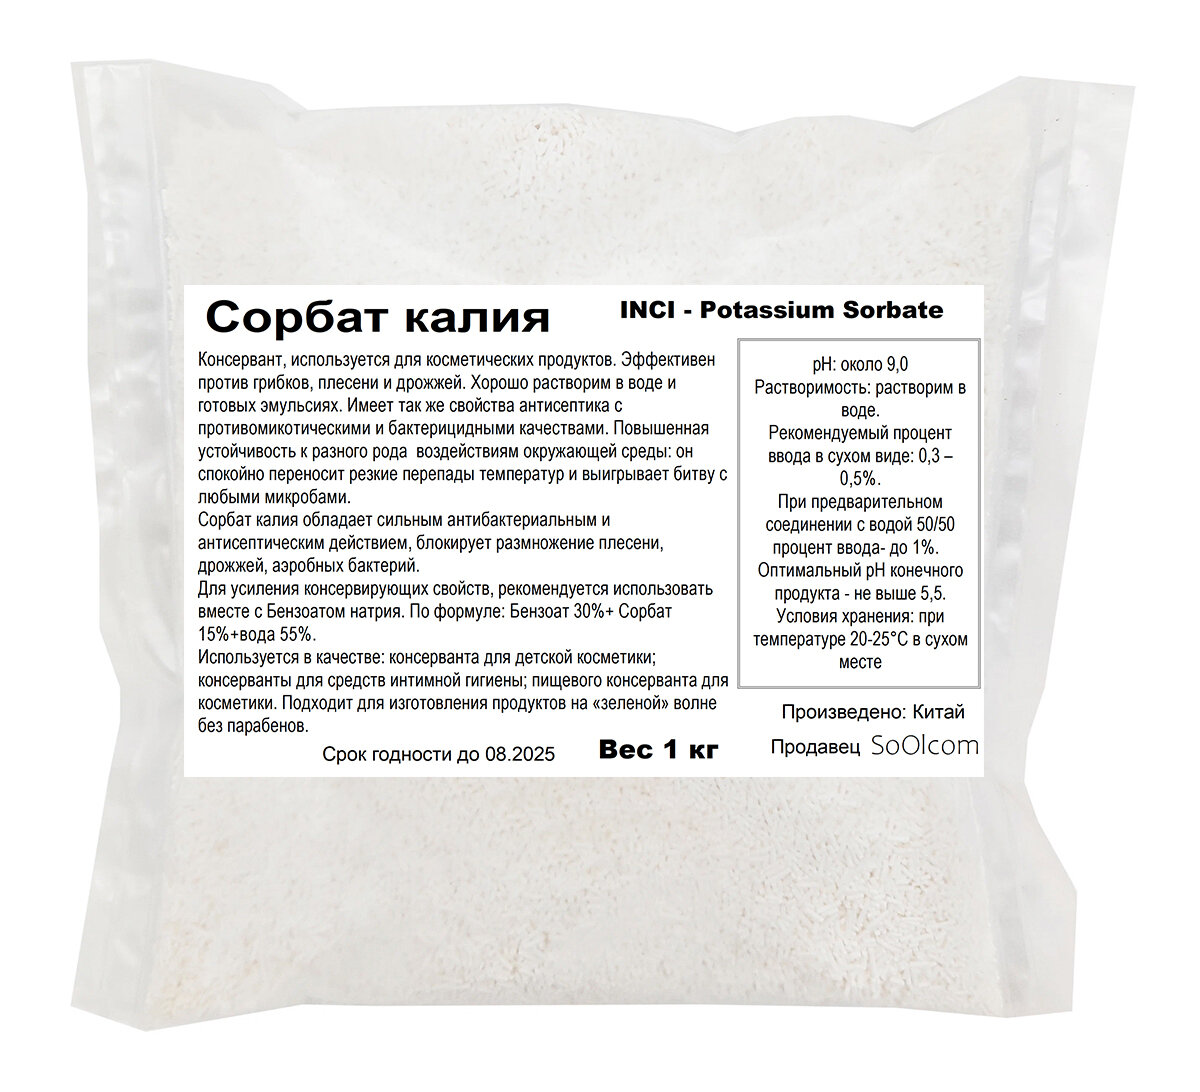 Сорбат калия, Е202, Potassium Sorbate / природный консервант (1 кг)